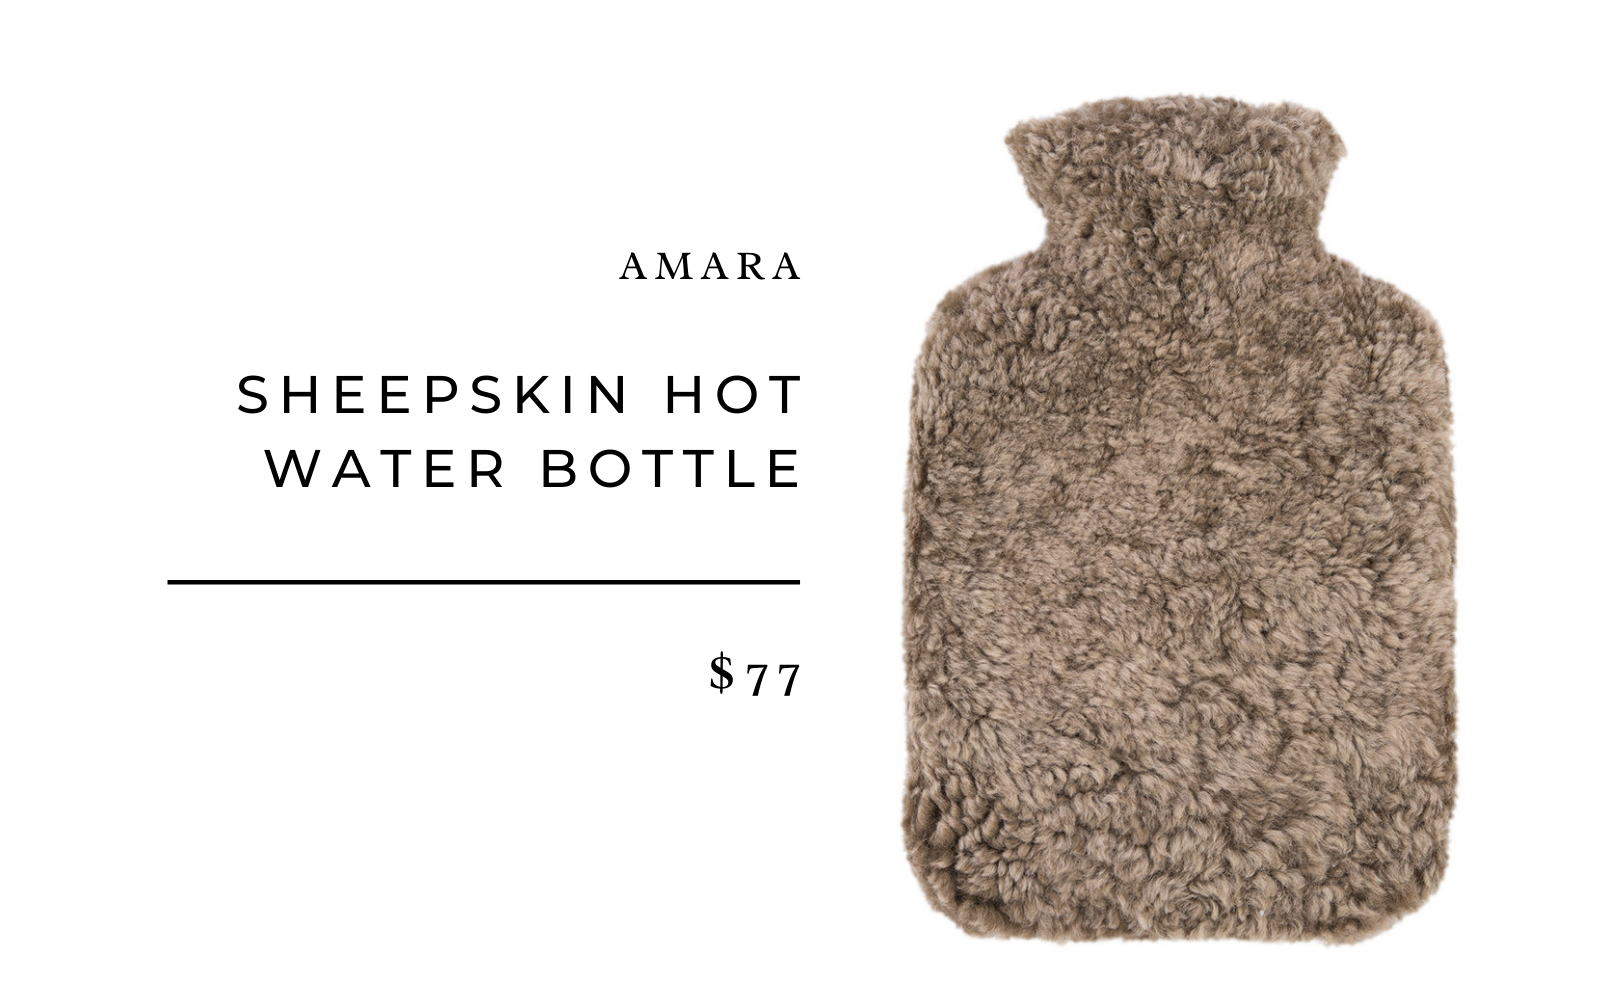 Amara Sheepskin Hot Water Bottle